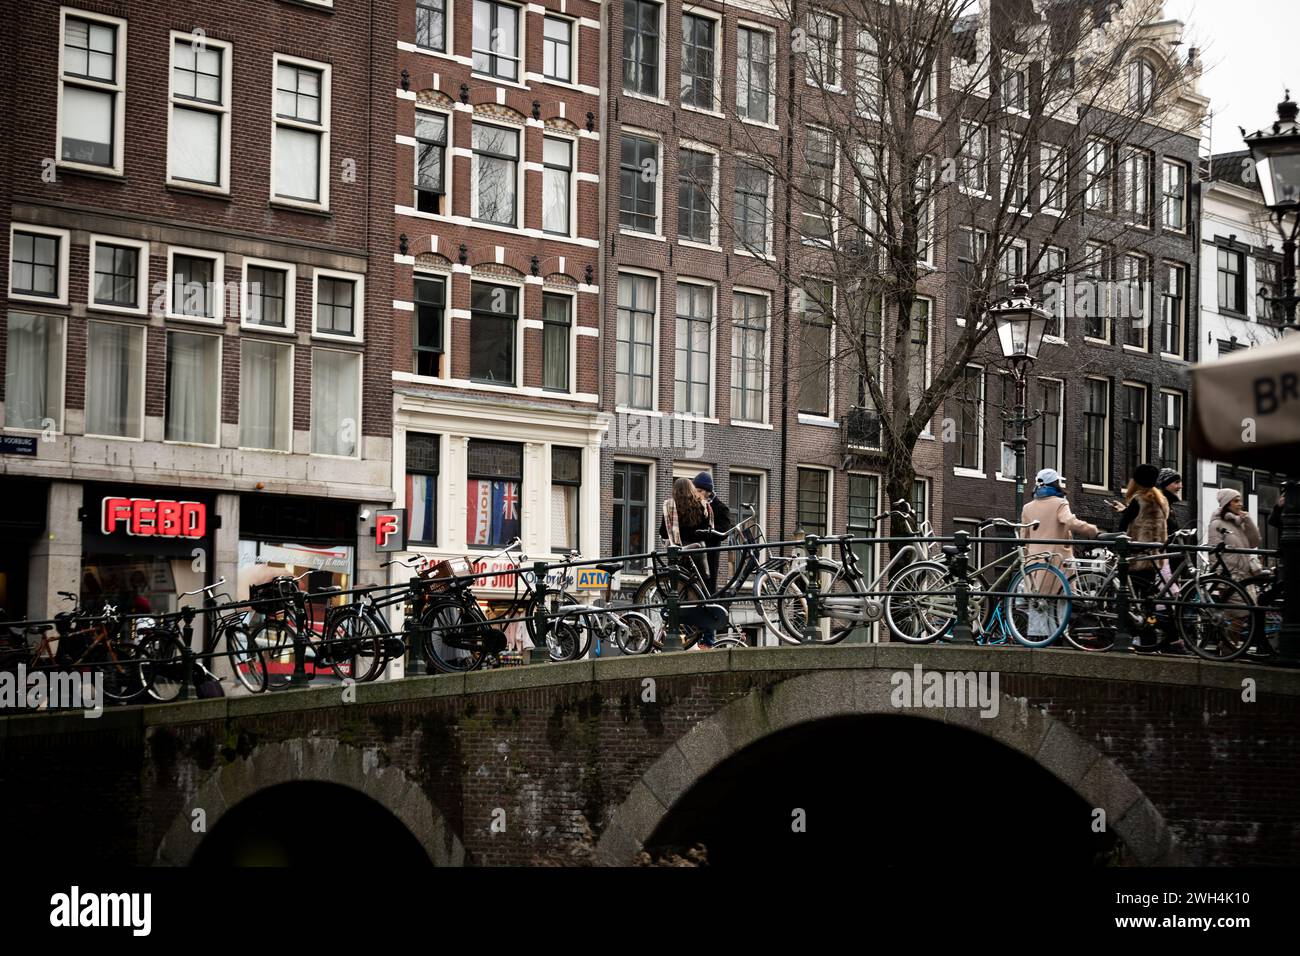 Amsterdam ist die Hauptstadt der Niederlande, bekannt für ihre reiche Geschichte, ihr künstlerisches Erbe, ihr ausgeklügeltes Kanalsystem und ihre engen Häuser. Stockfoto